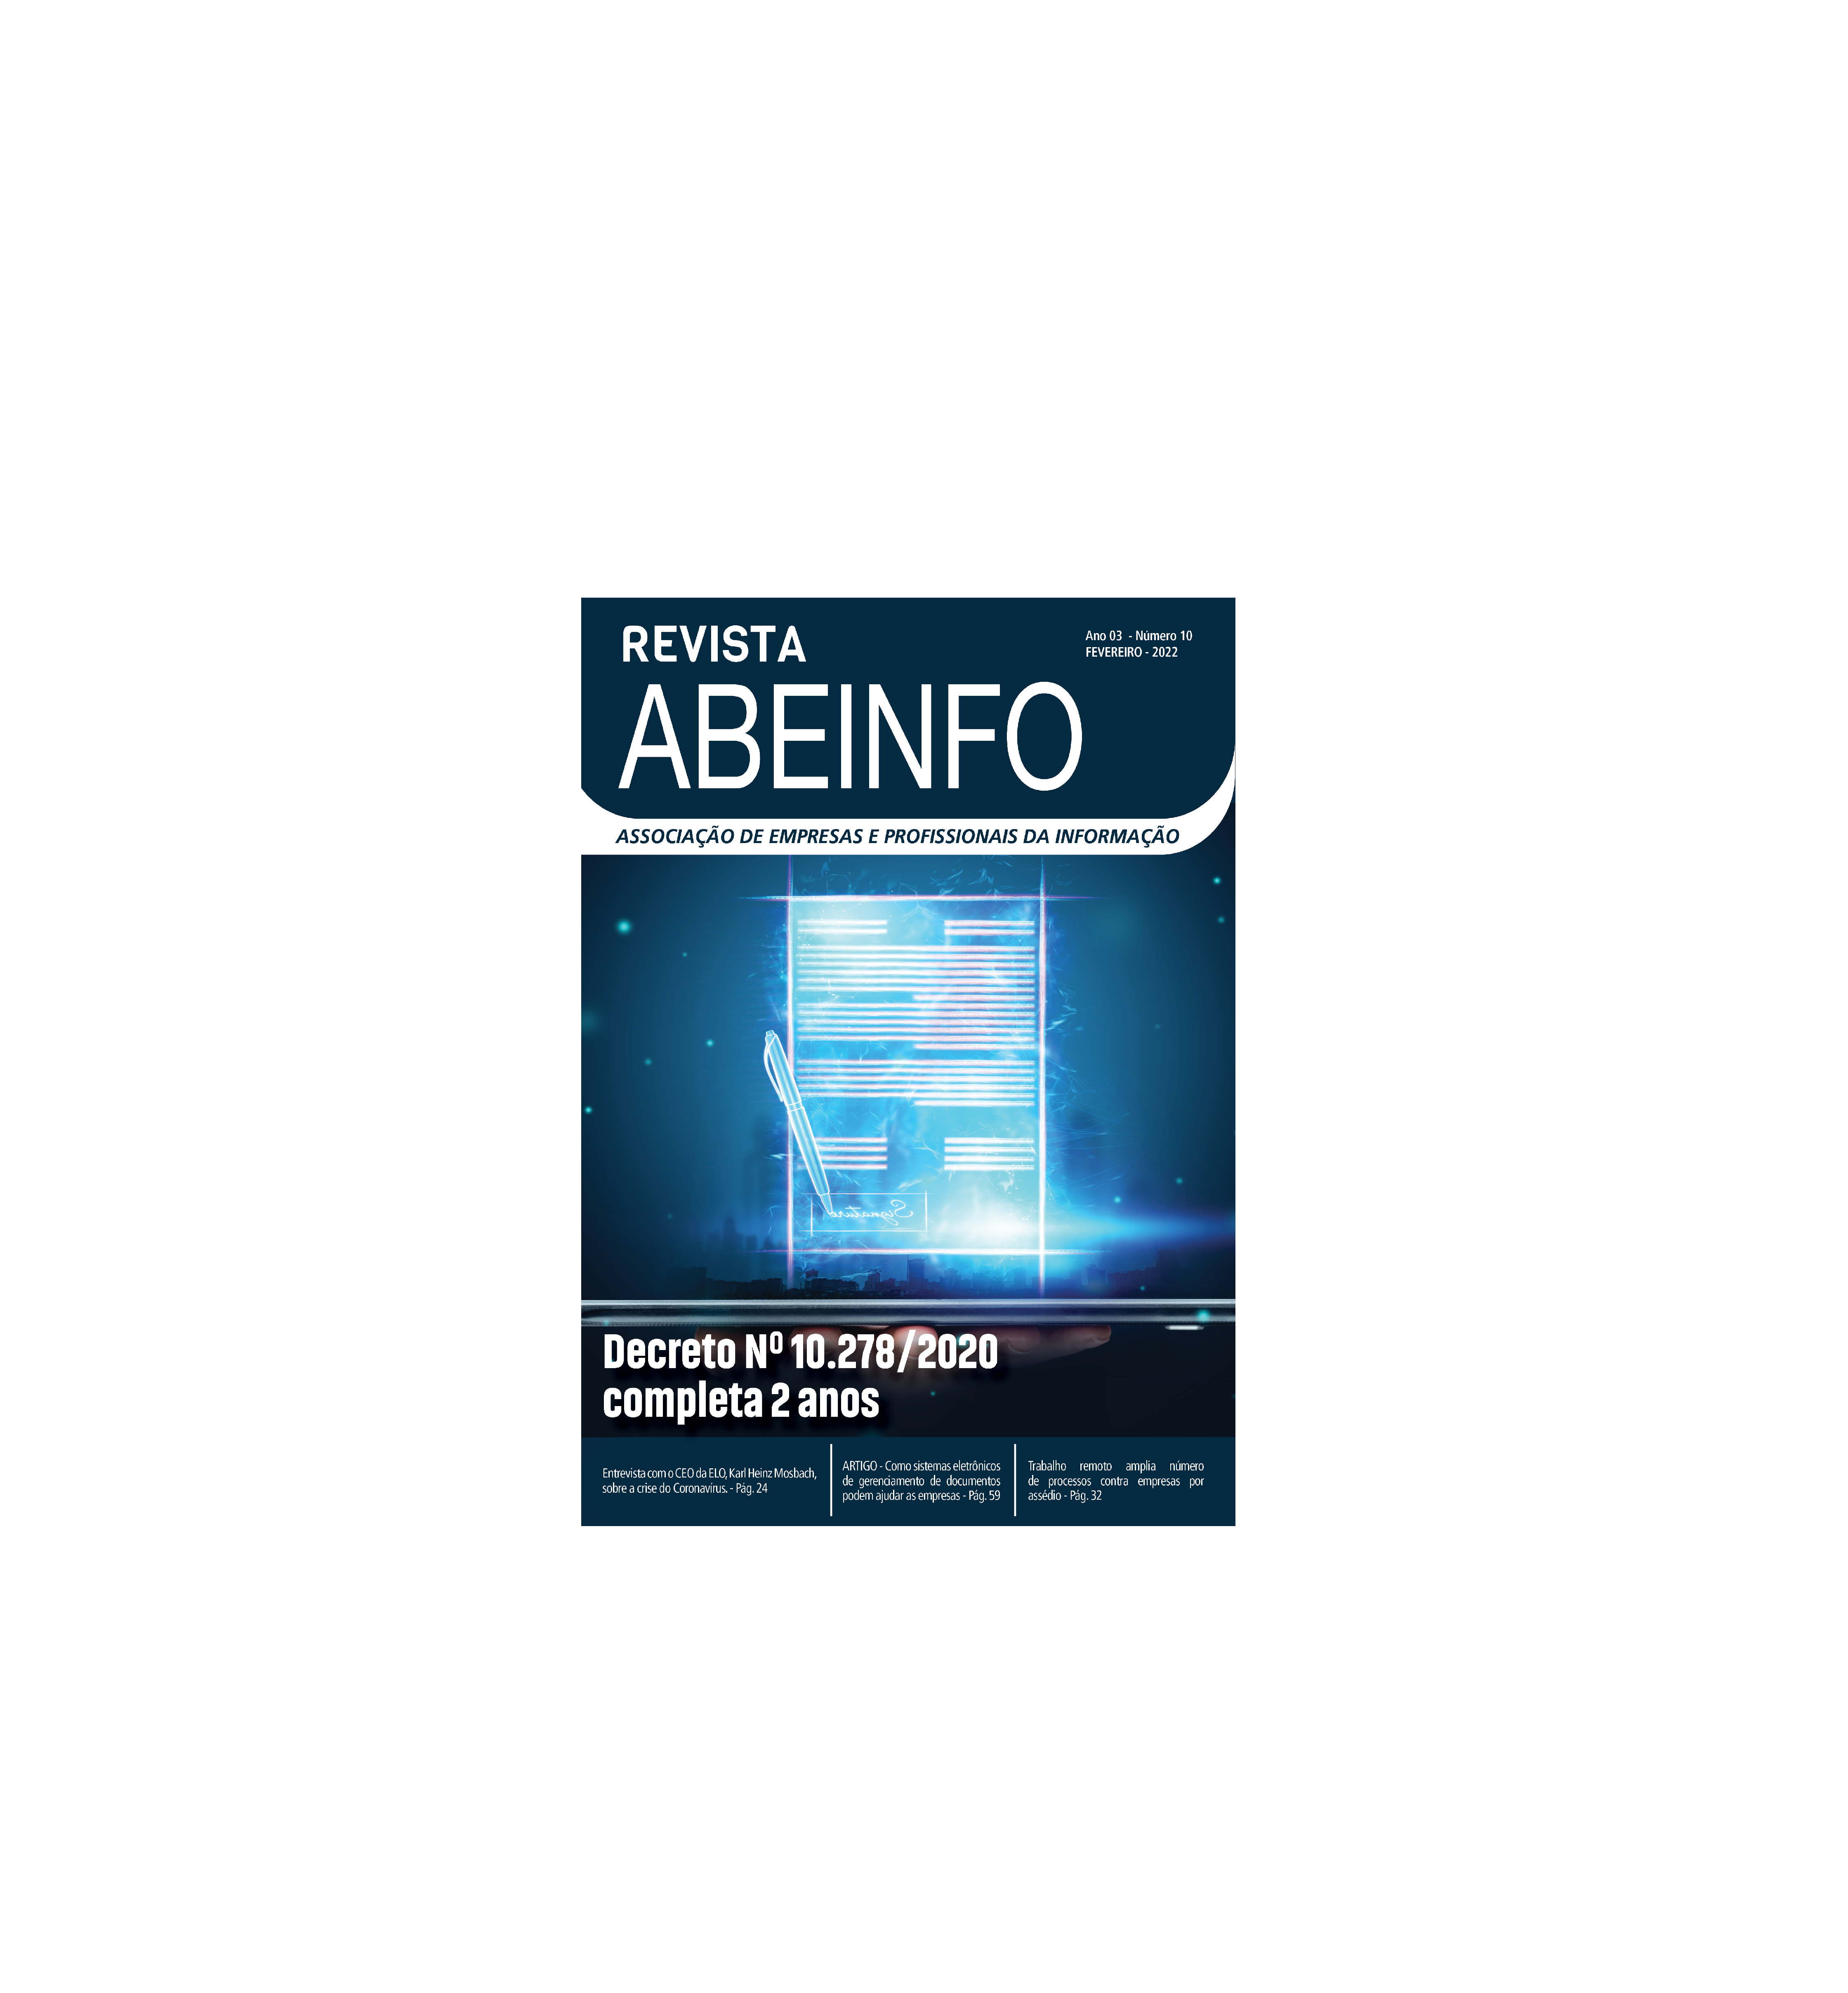 Revista ABEINFO chega à 10a edição. Confira!